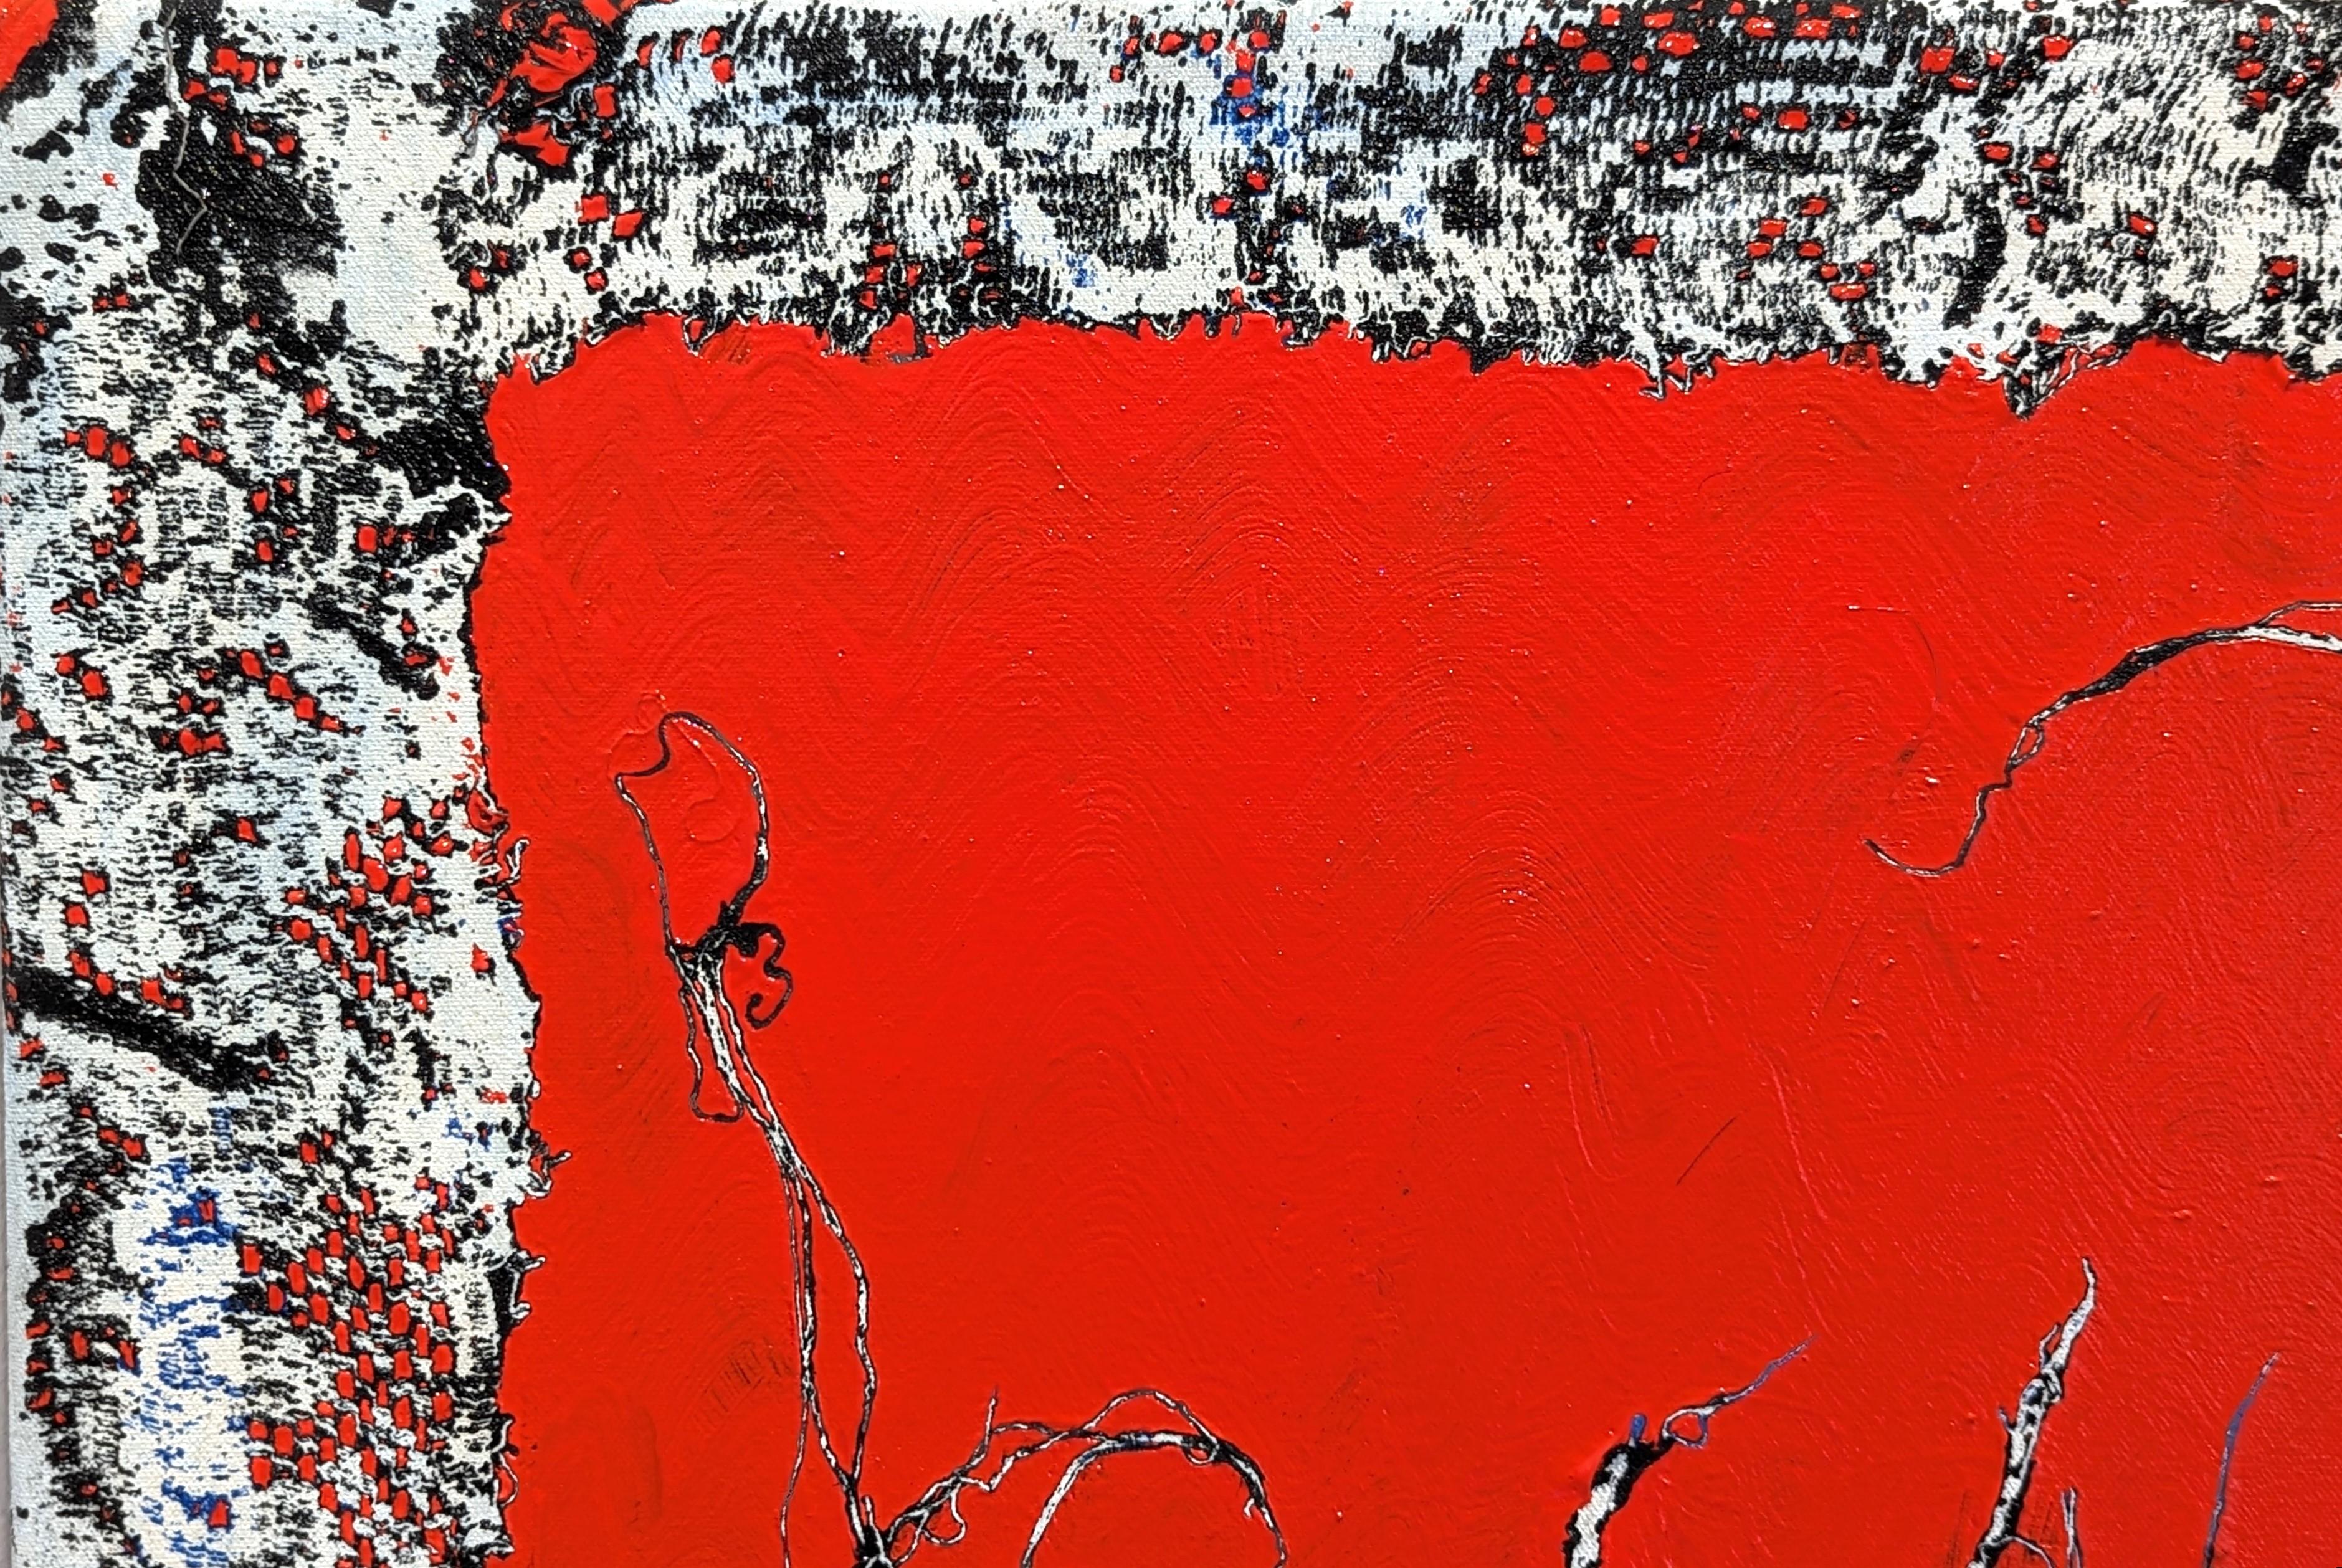 Red Hunt Peinture contemporaine en dentelle abstraite rouge, noire et blanche - Contemporain Painting par Mark Flood